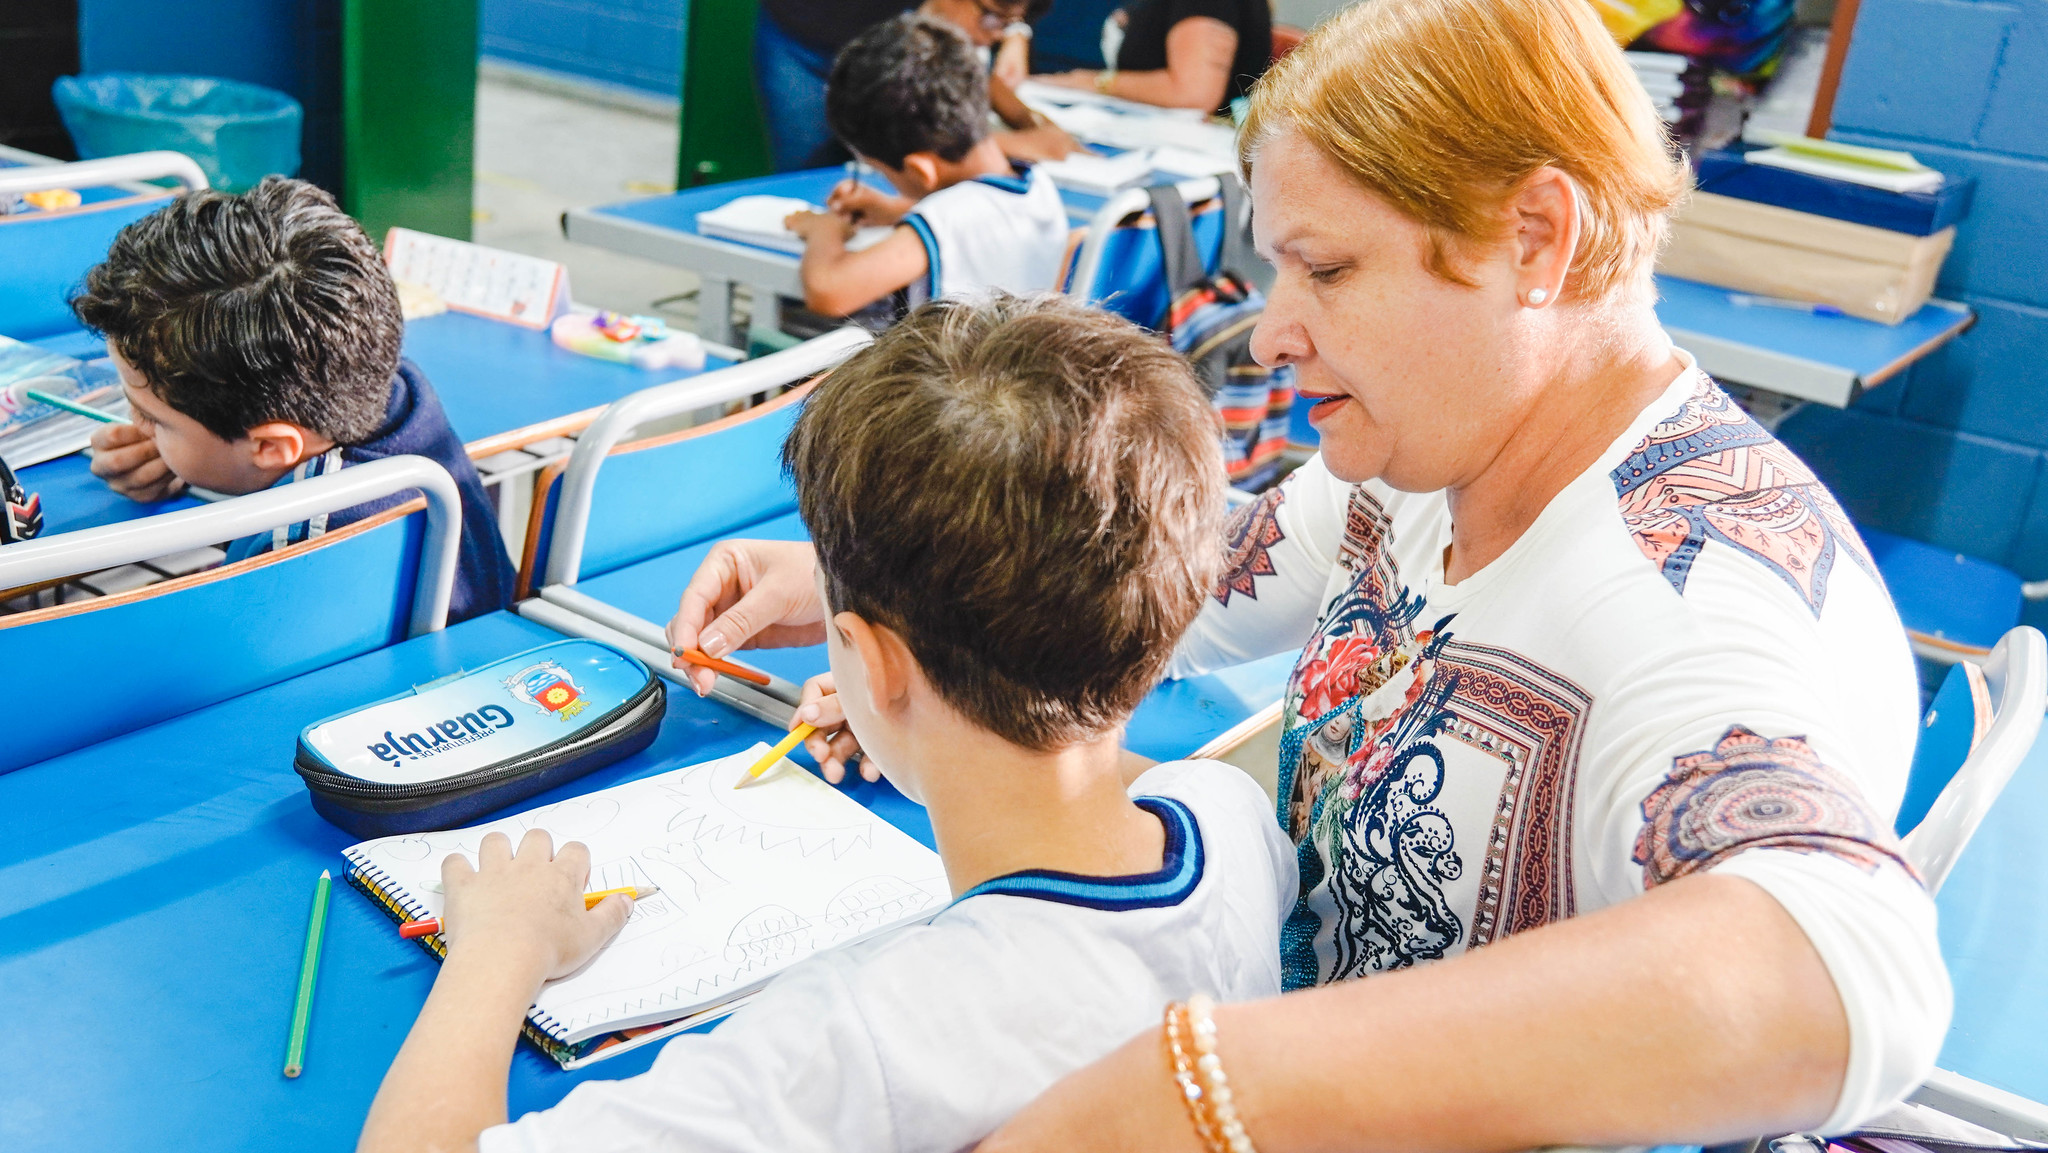 Prefeitura de Guarujá segue com inscrições abertas para processo seletivo de professores